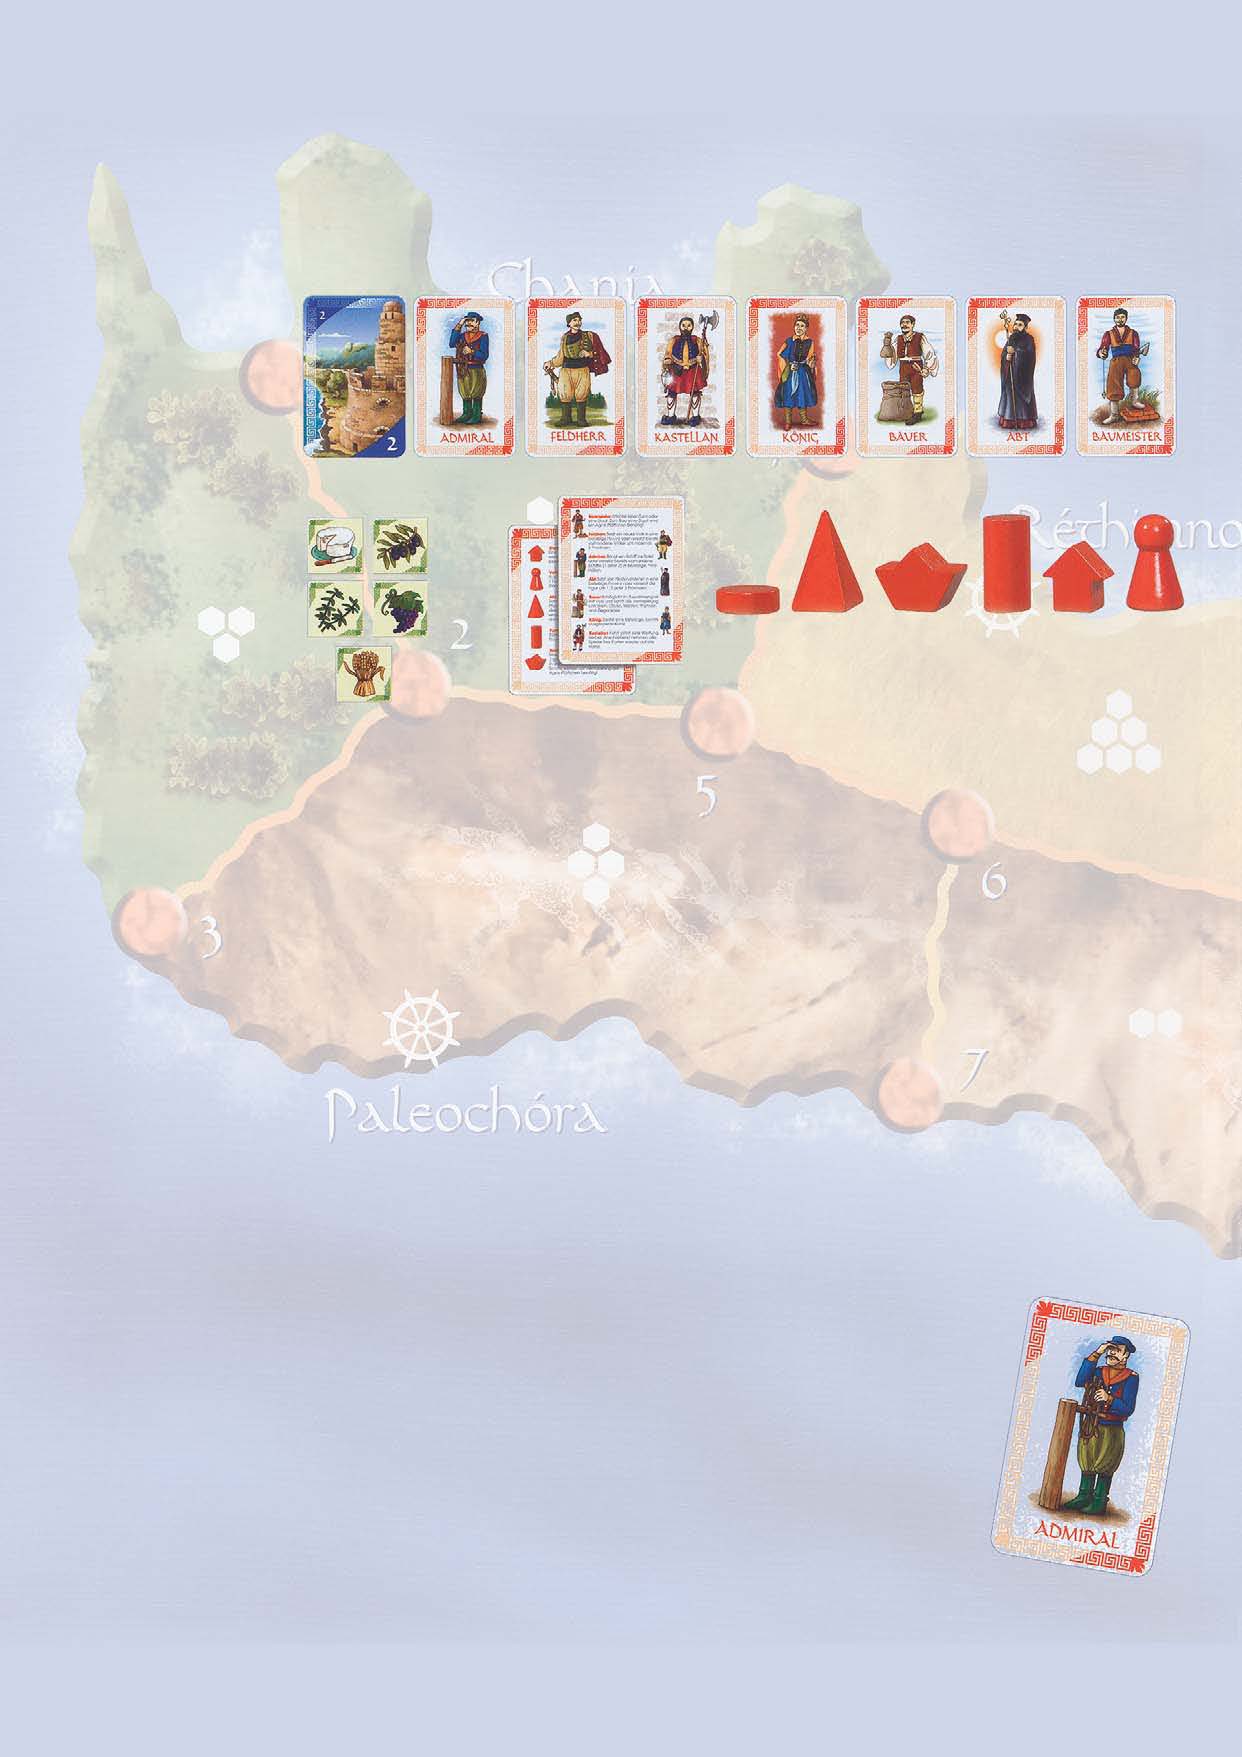 Koncept gry Gra toczy się na wyspie Kreta, podczas XIV wieku. Zaludniaj prowincje Krety swoimi ziomkami i opactwami. Buduj wsie, sprowadź statki do portów i obrastaj we wpływy stawiając potężne forty.